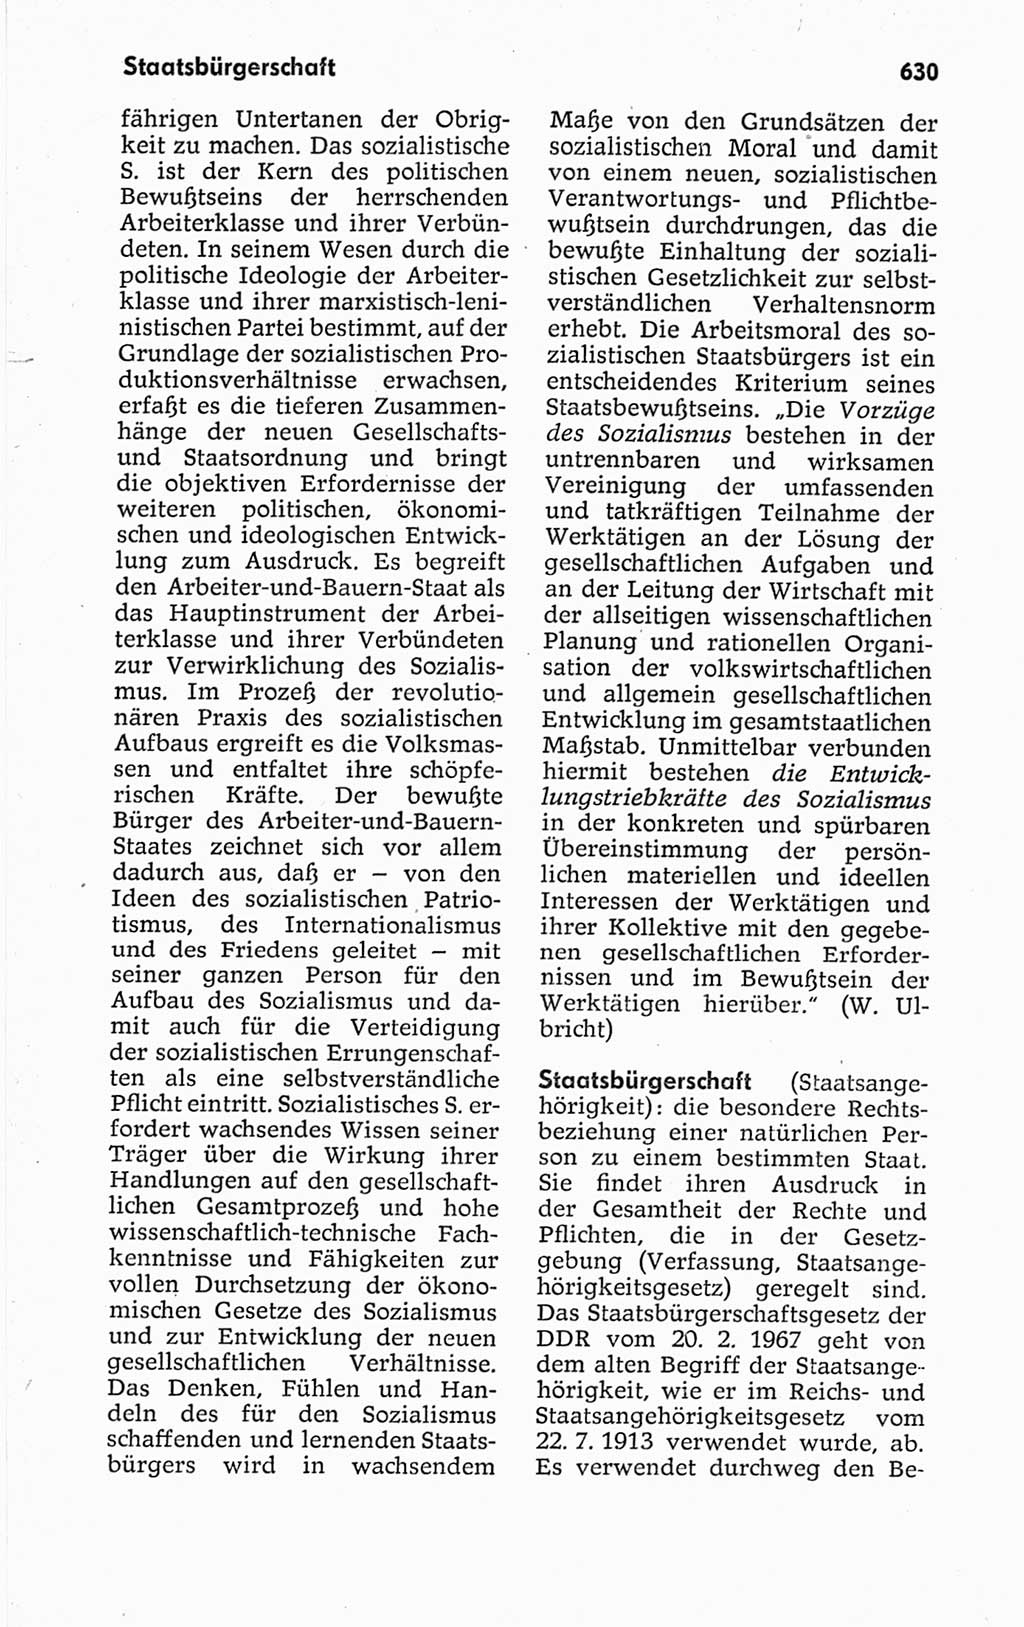 Kleines politisches Wörterbuch [Deutsche Demokratische Republik (DDR)] 1967, Seite 630 (Kl. pol. Wb. DDR 1967, S. 630)